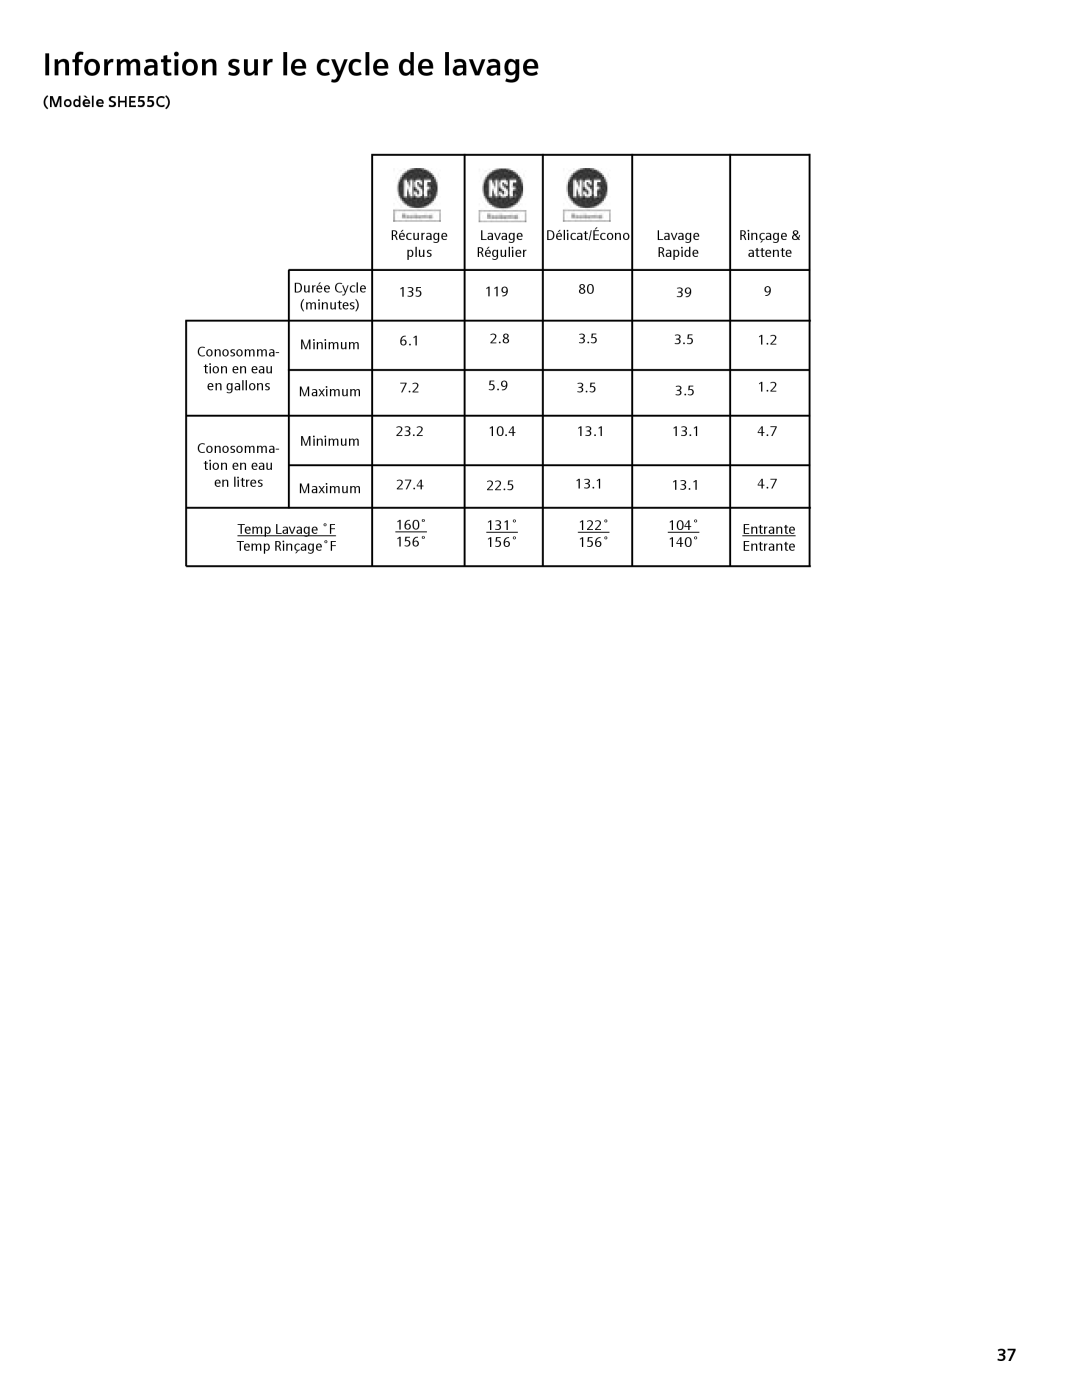 Compaq manual Modèle SHE55C, Information sur le cycle de lavage, Régulier, Durée Cycle, en gallons 